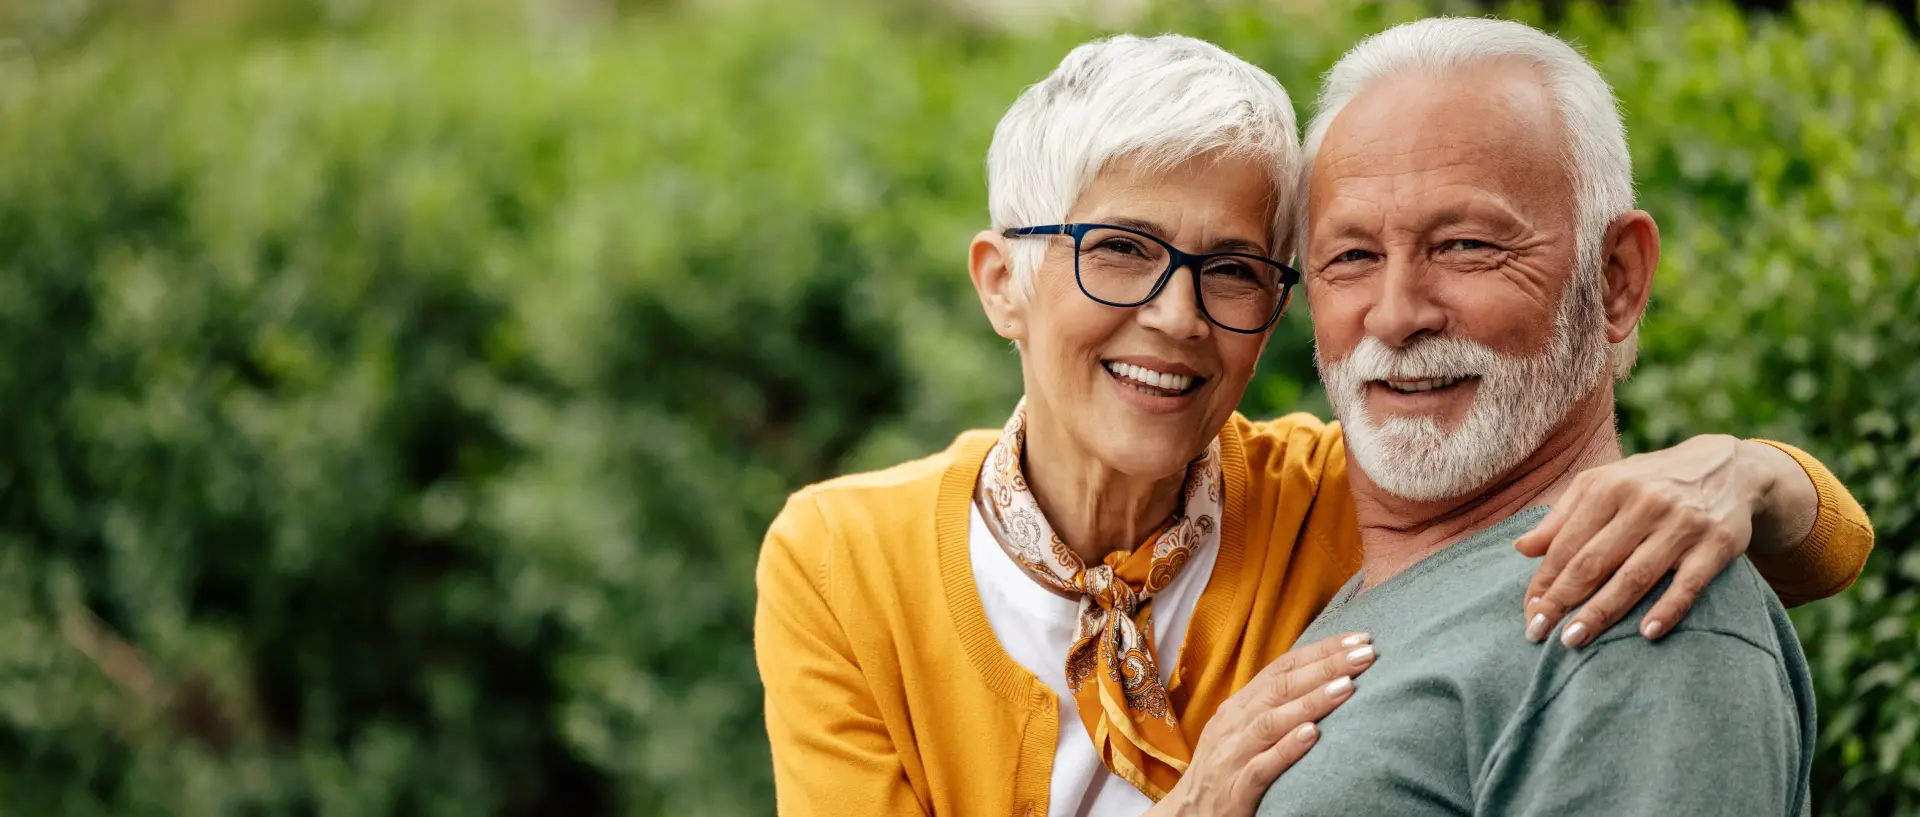 Zwei Senioren sitzen glücklich auf einer Bank im Grünen